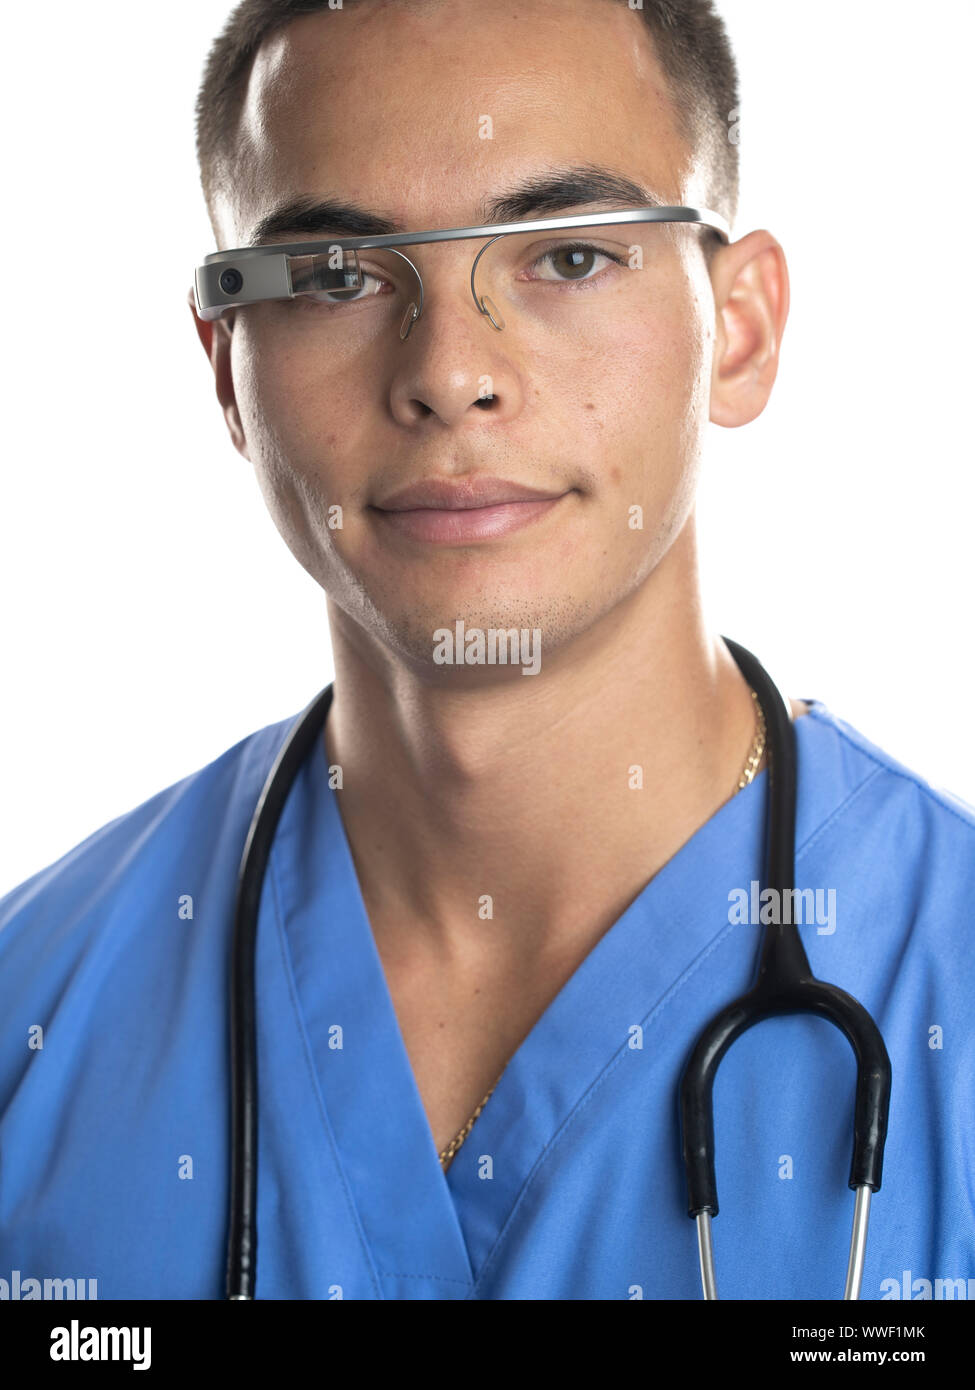 Google glass verres smart-une tête optique de visualisation utilisée dans un cadre médical Banque D'Images